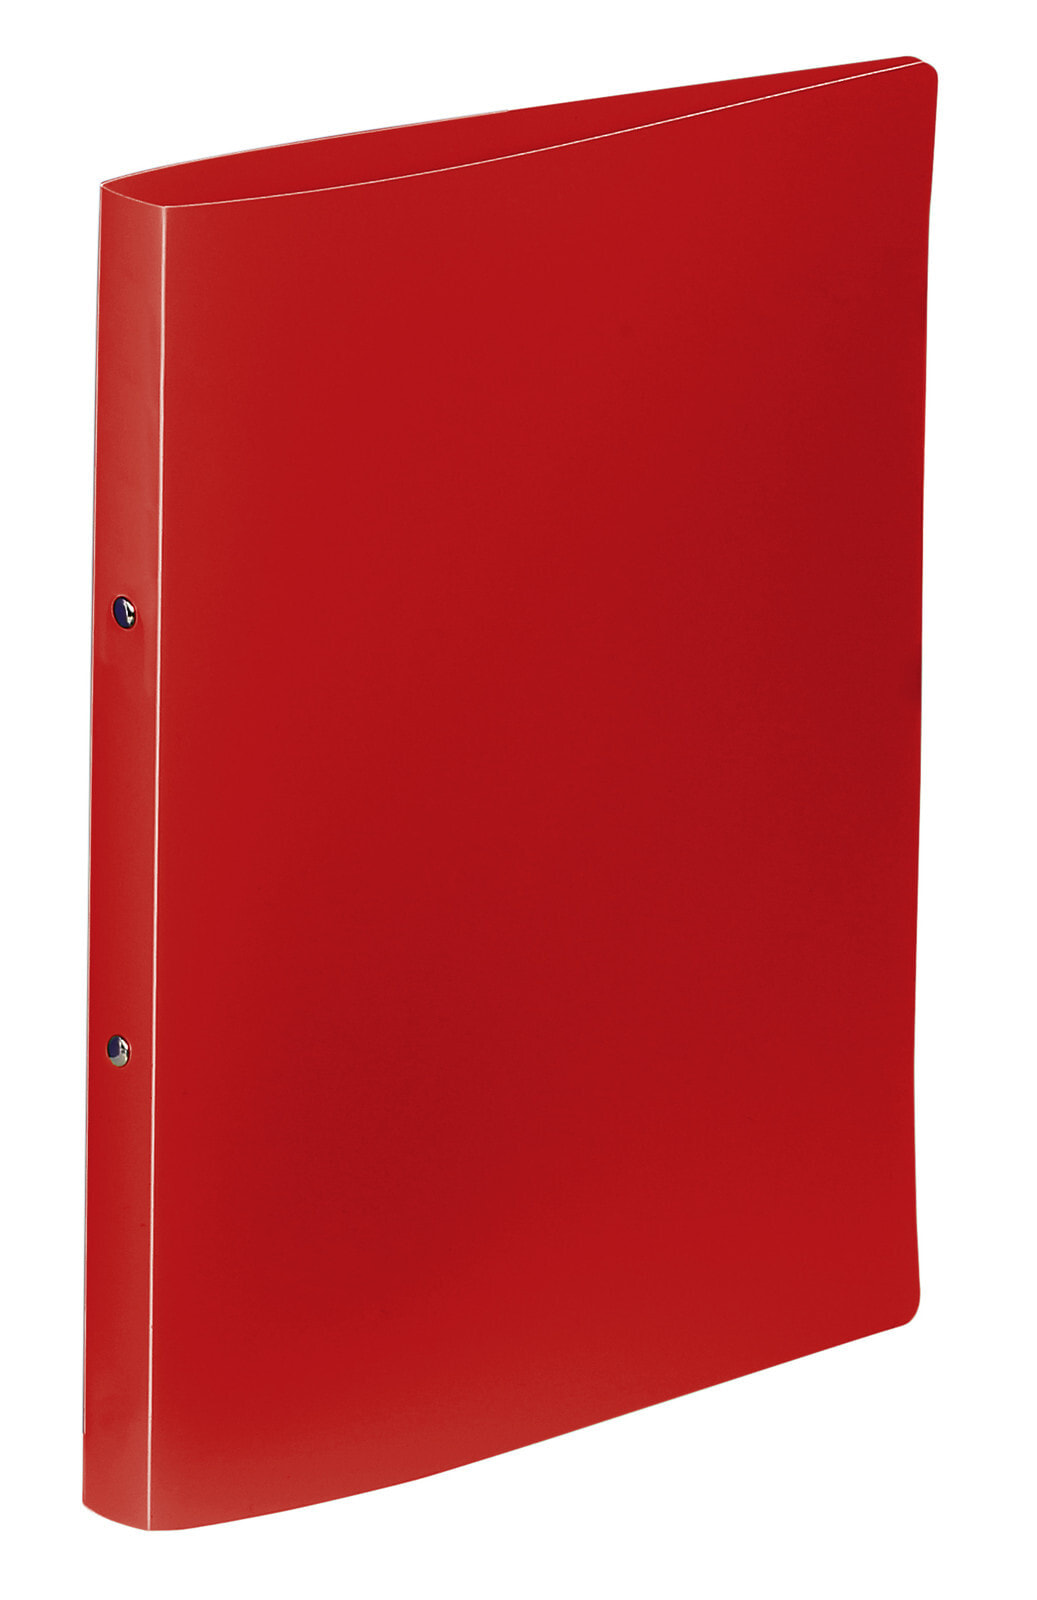 VIQUEL 020201 08 - A4 - Polypropylene (PP) - Red - Red - 1.5 cm - 2.5 cm